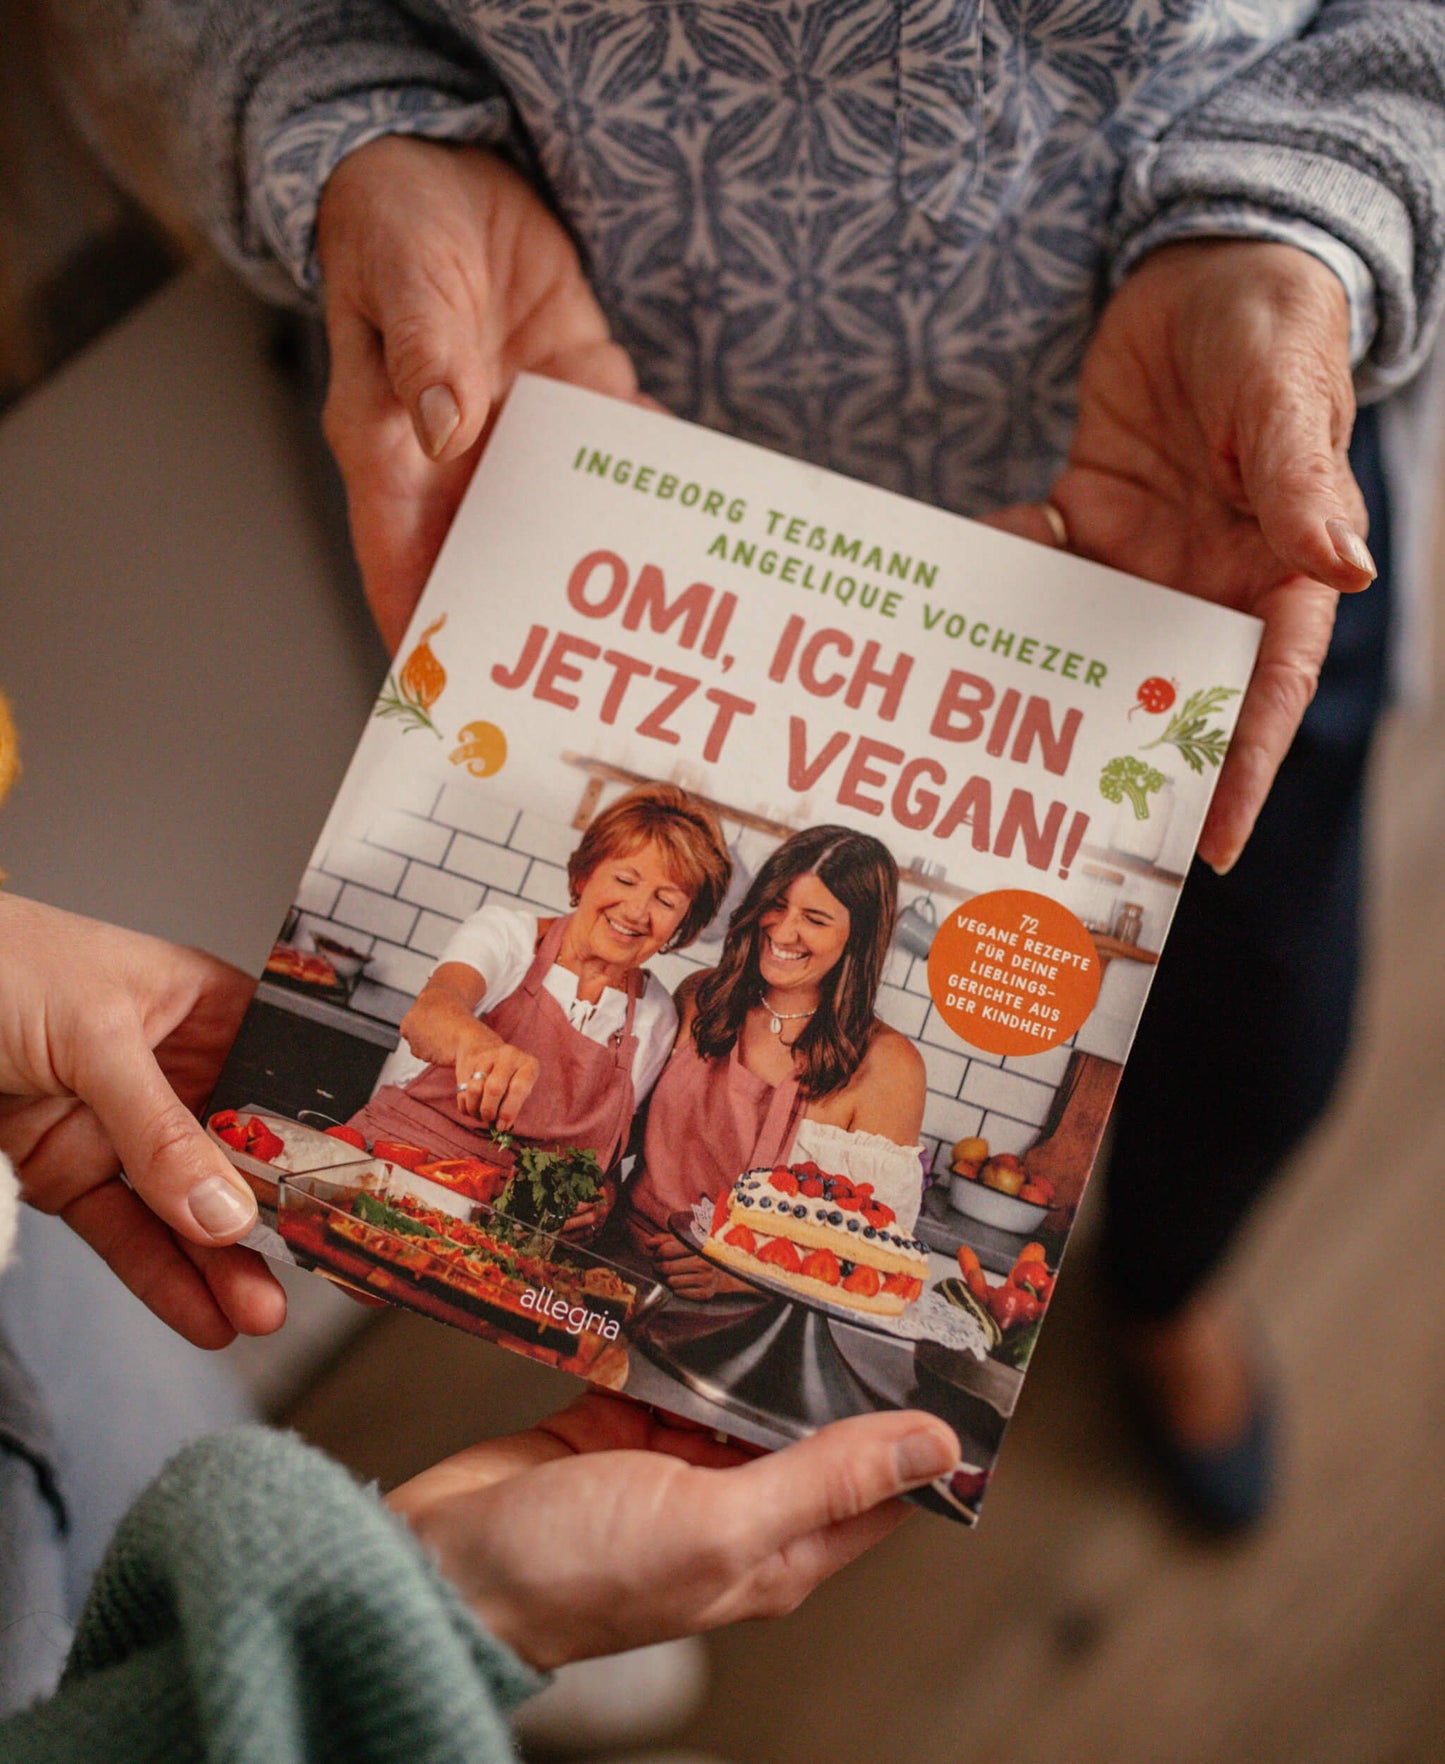 Omi, ich bin jetzt Vegan! - Kochbuch handsigniert - Kochbuch - MARKTSAM